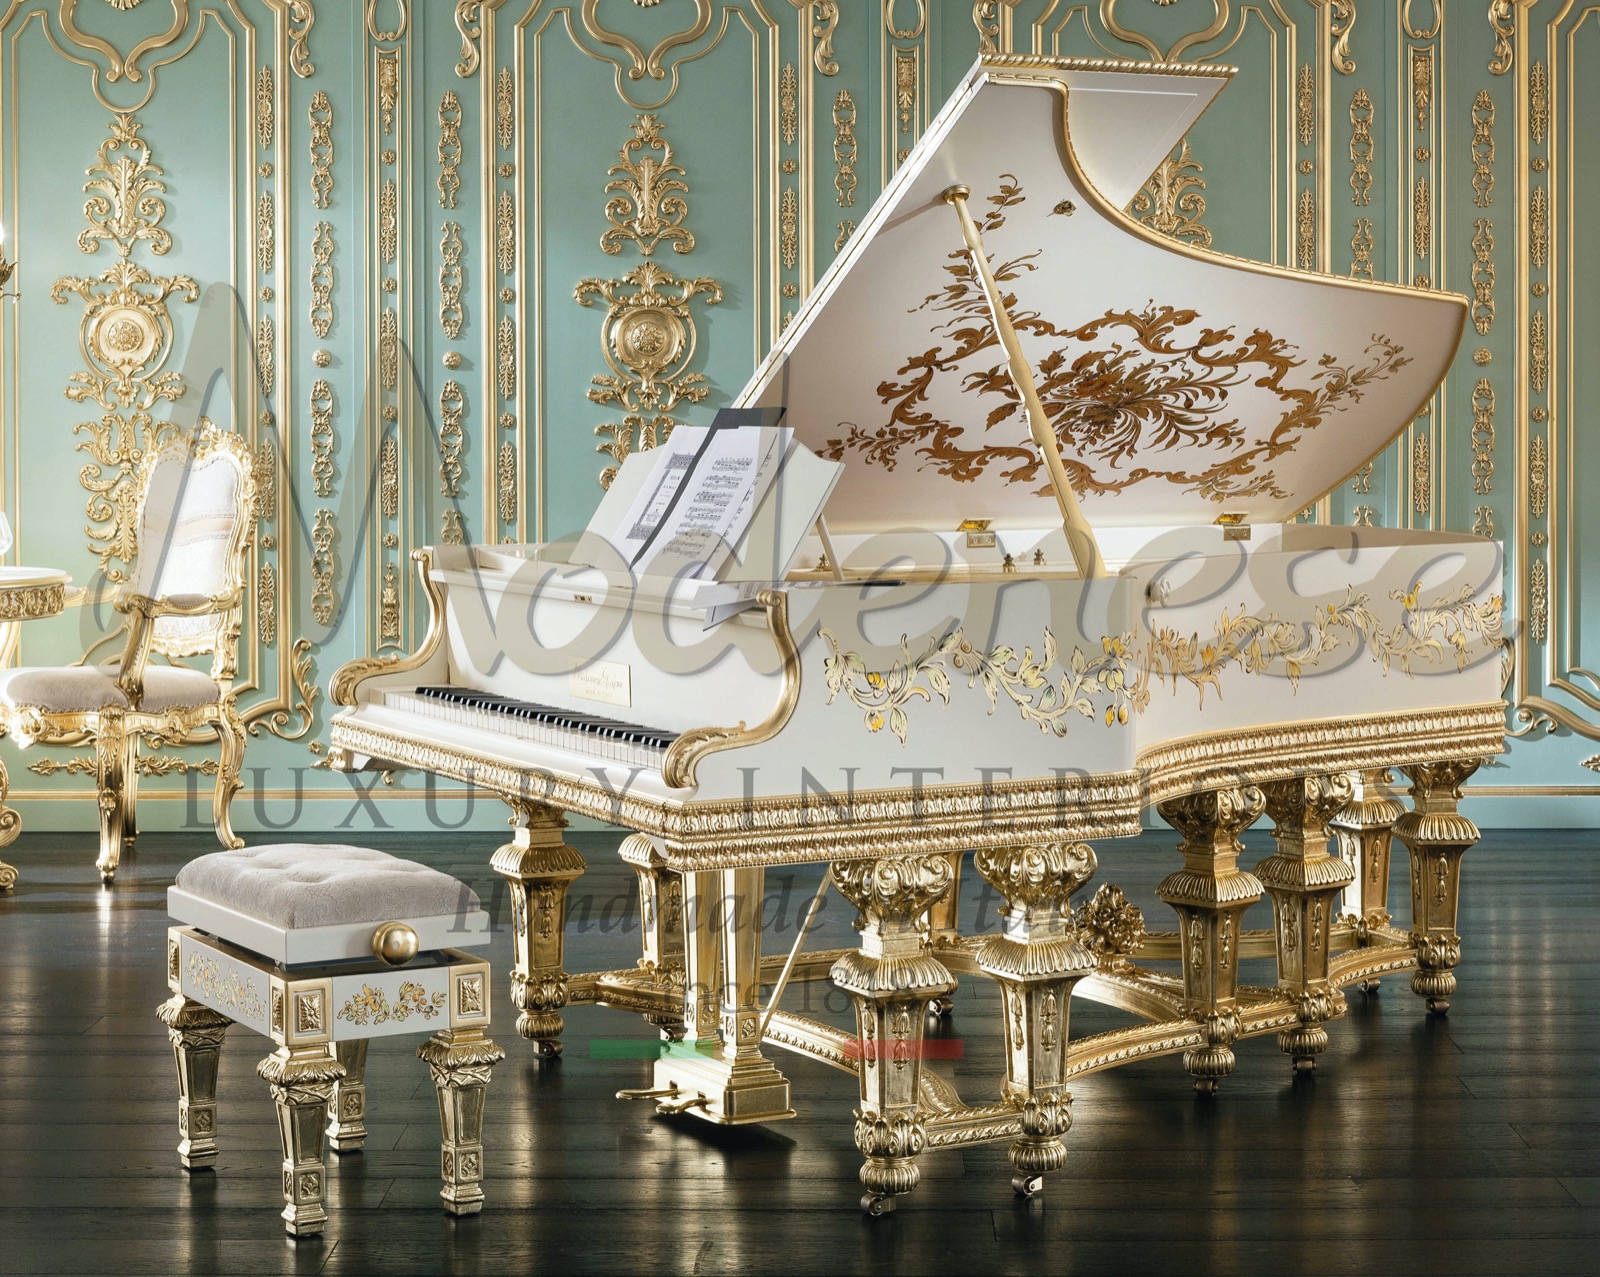 intérieurs italiens de luxe production artisanale musique restauration de piano Steinway Bernstein blunter décor classique feuille d'or faite main